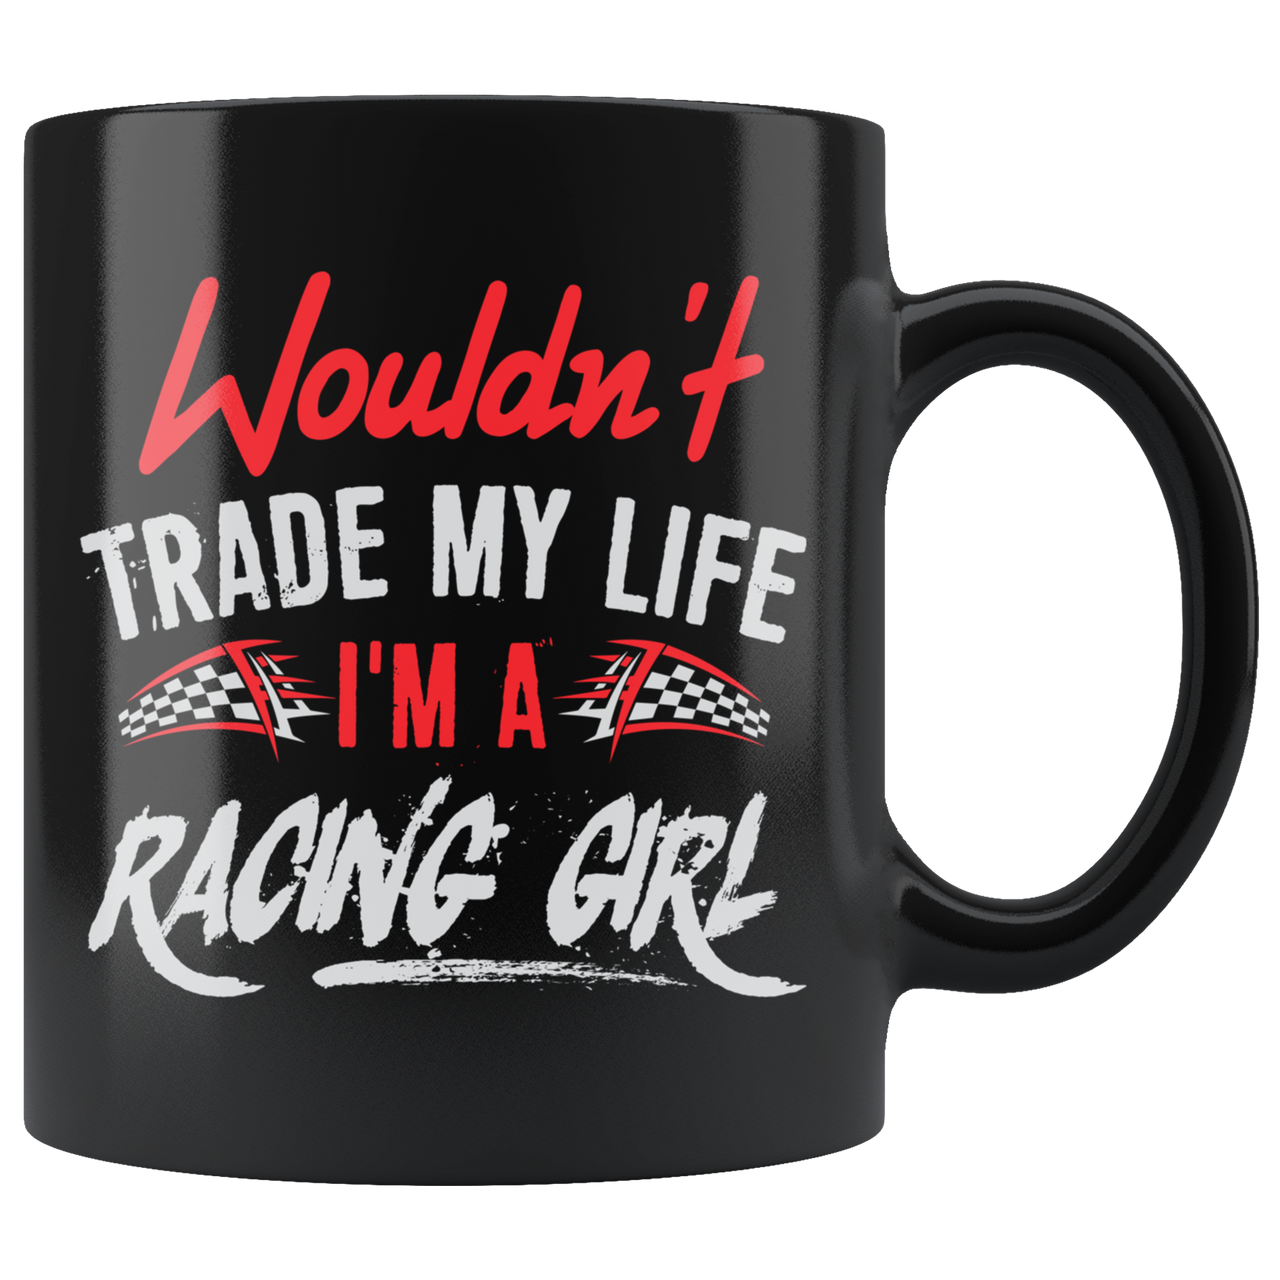 Wouldn't Trade My Life I'm A Racing Girl Mug!